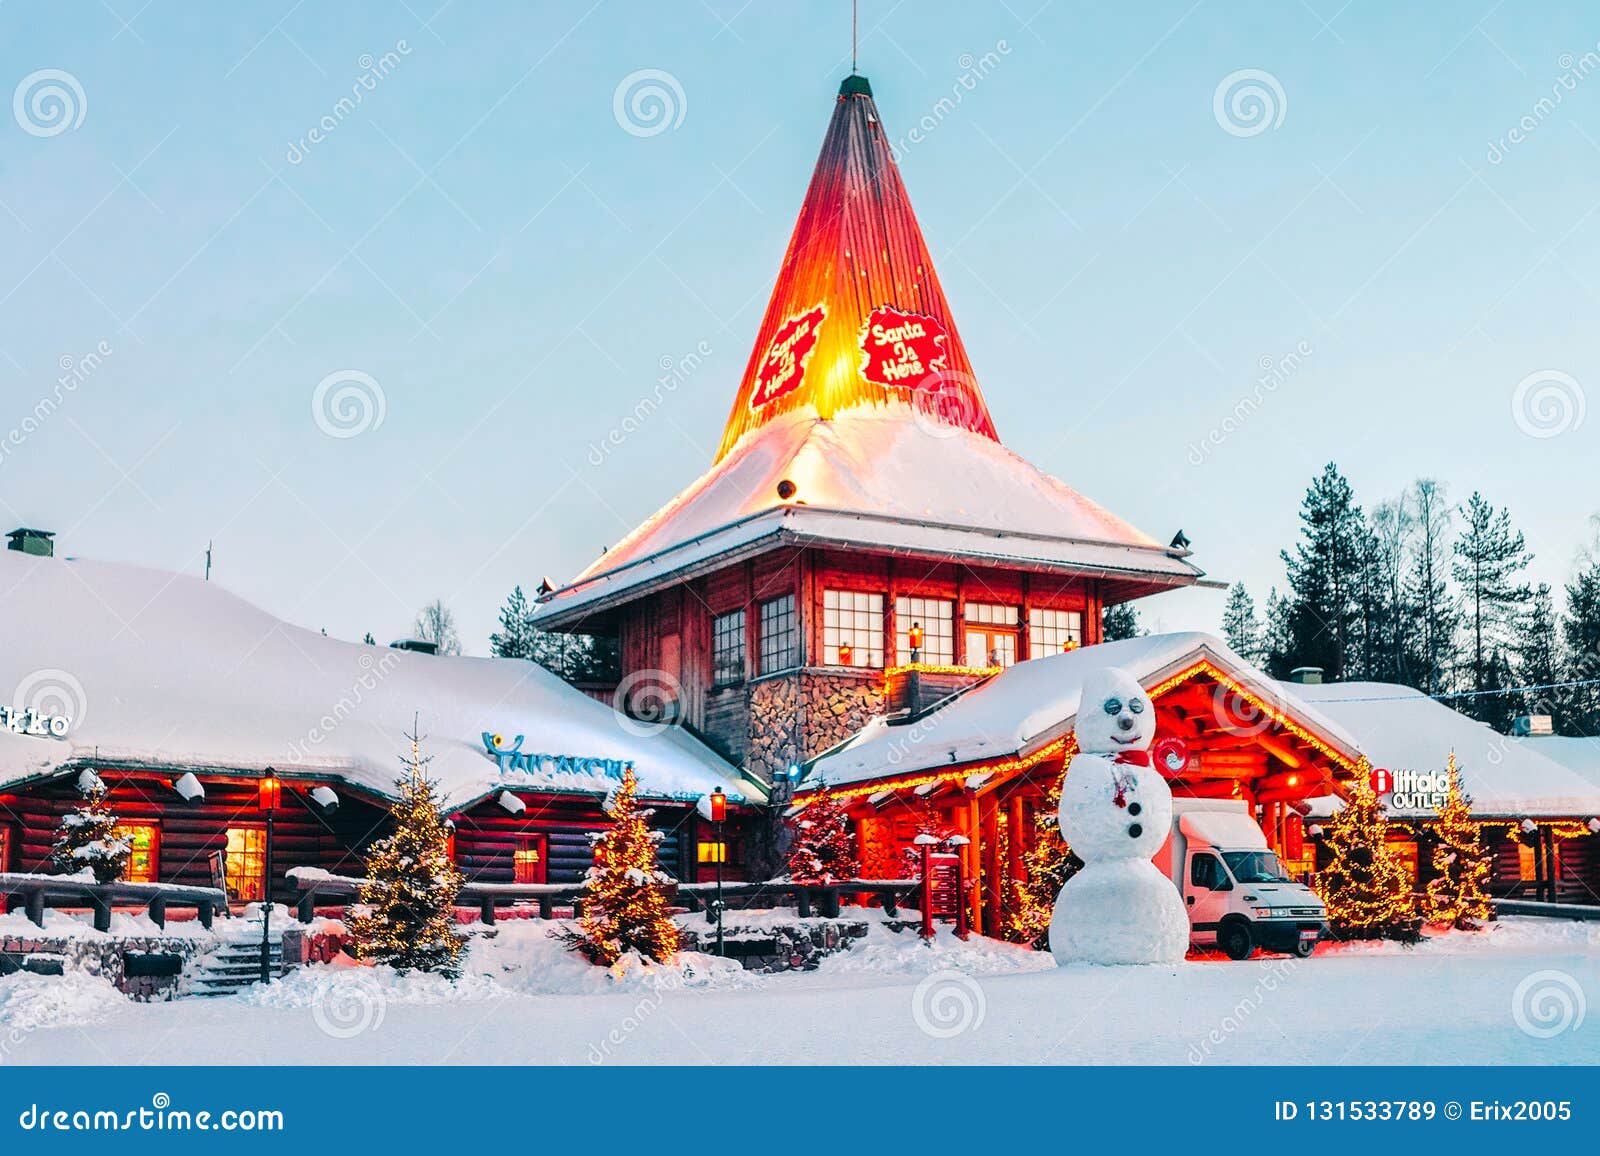 Snowman At Santa Office In Santa Claus Village In Rovaniemi In